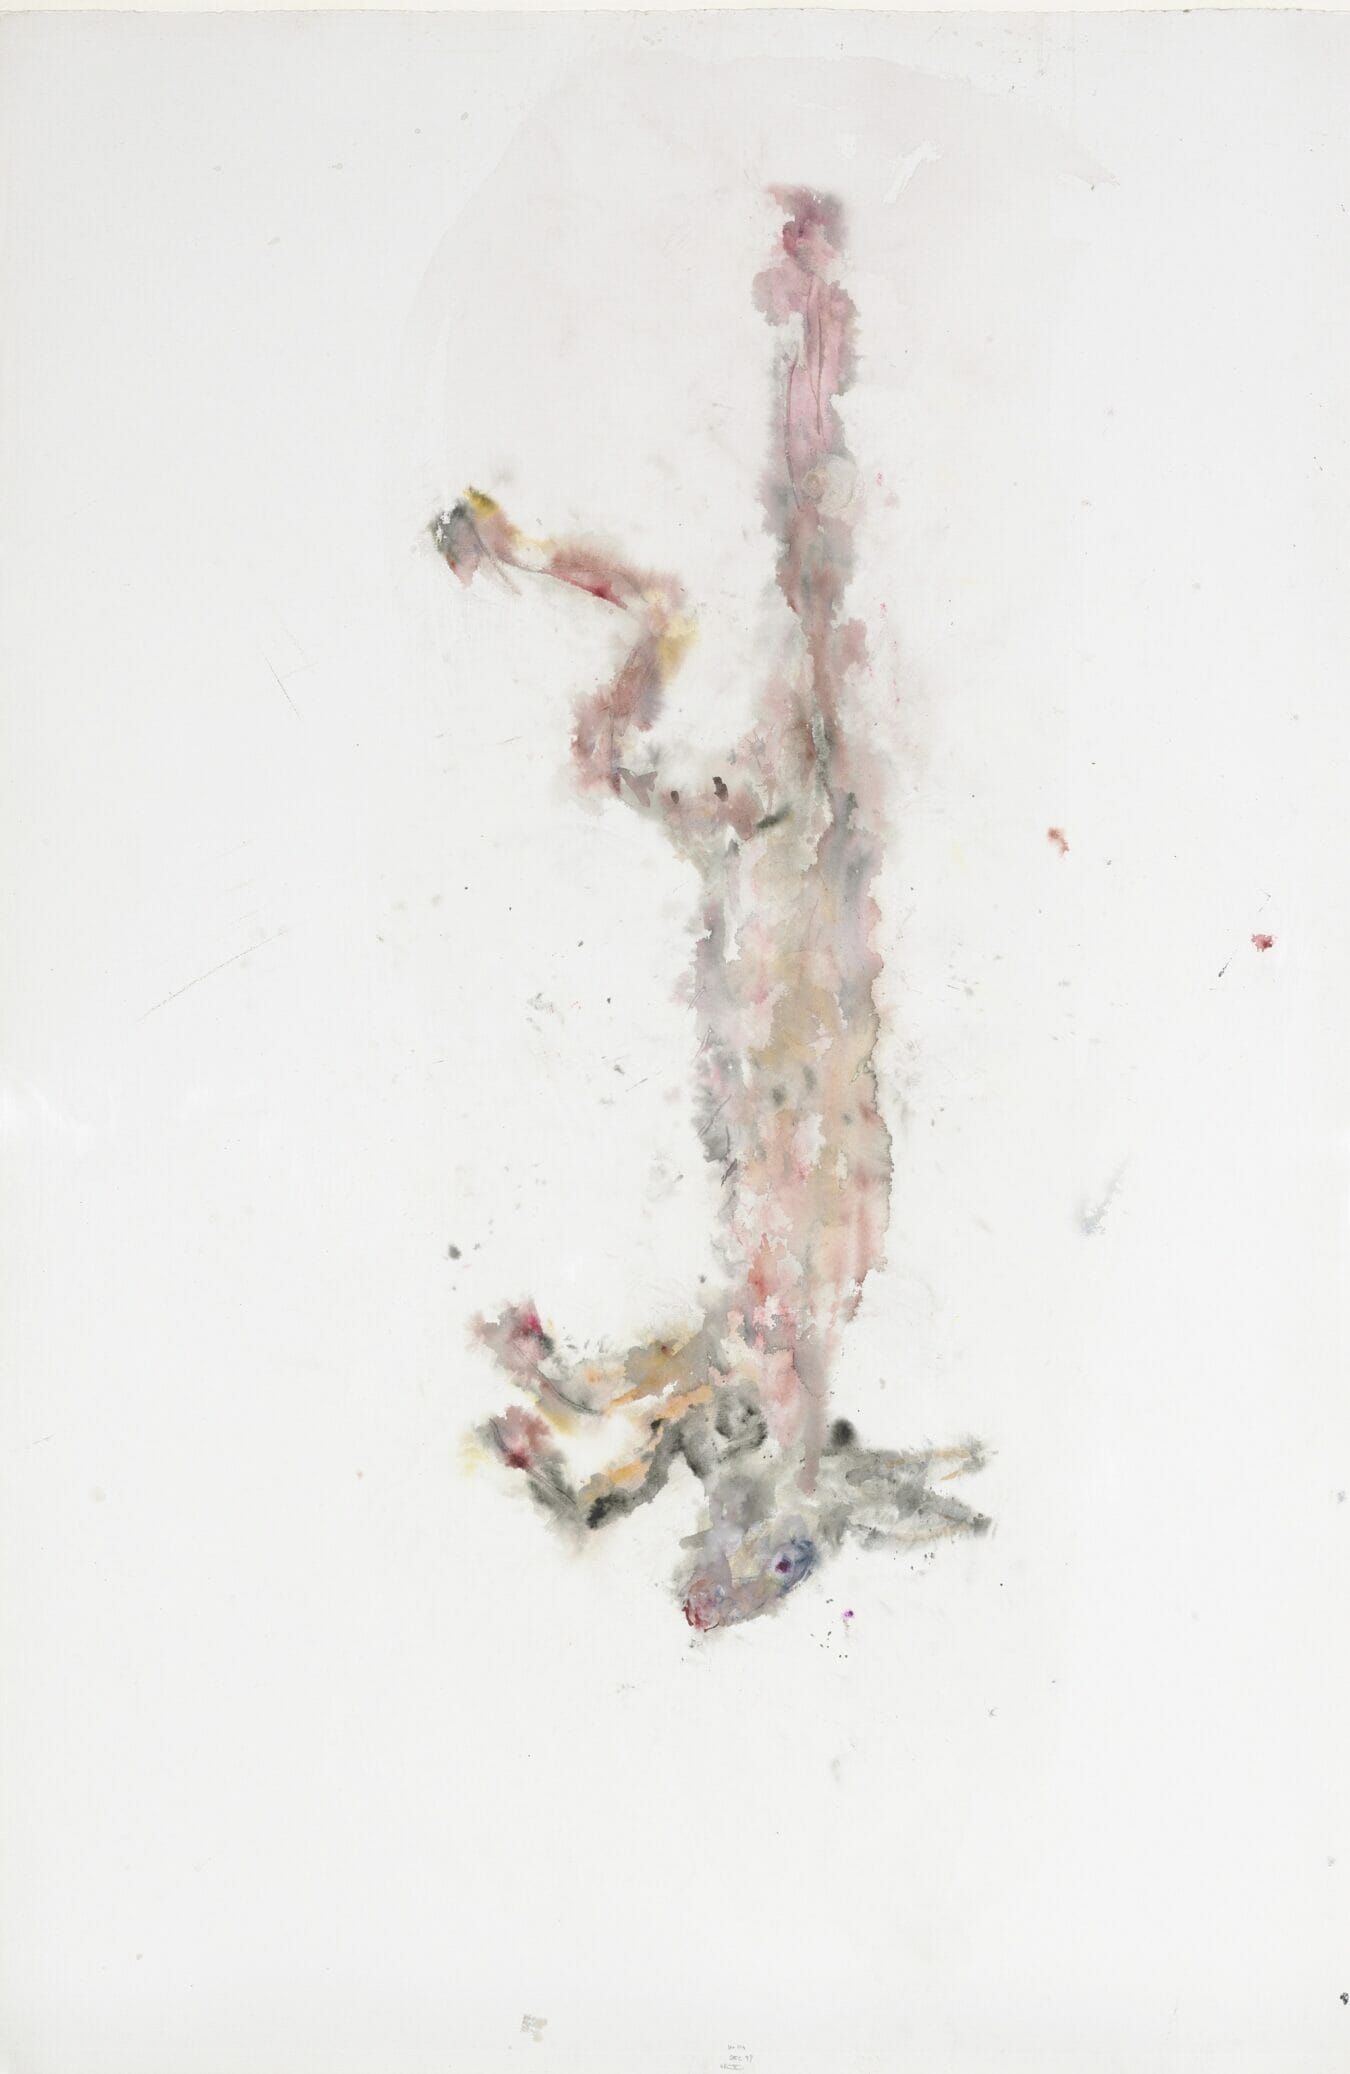 Schotse witte haas nr. X, 1997, aquarel, 152 x 102 cm, De Pont Museum